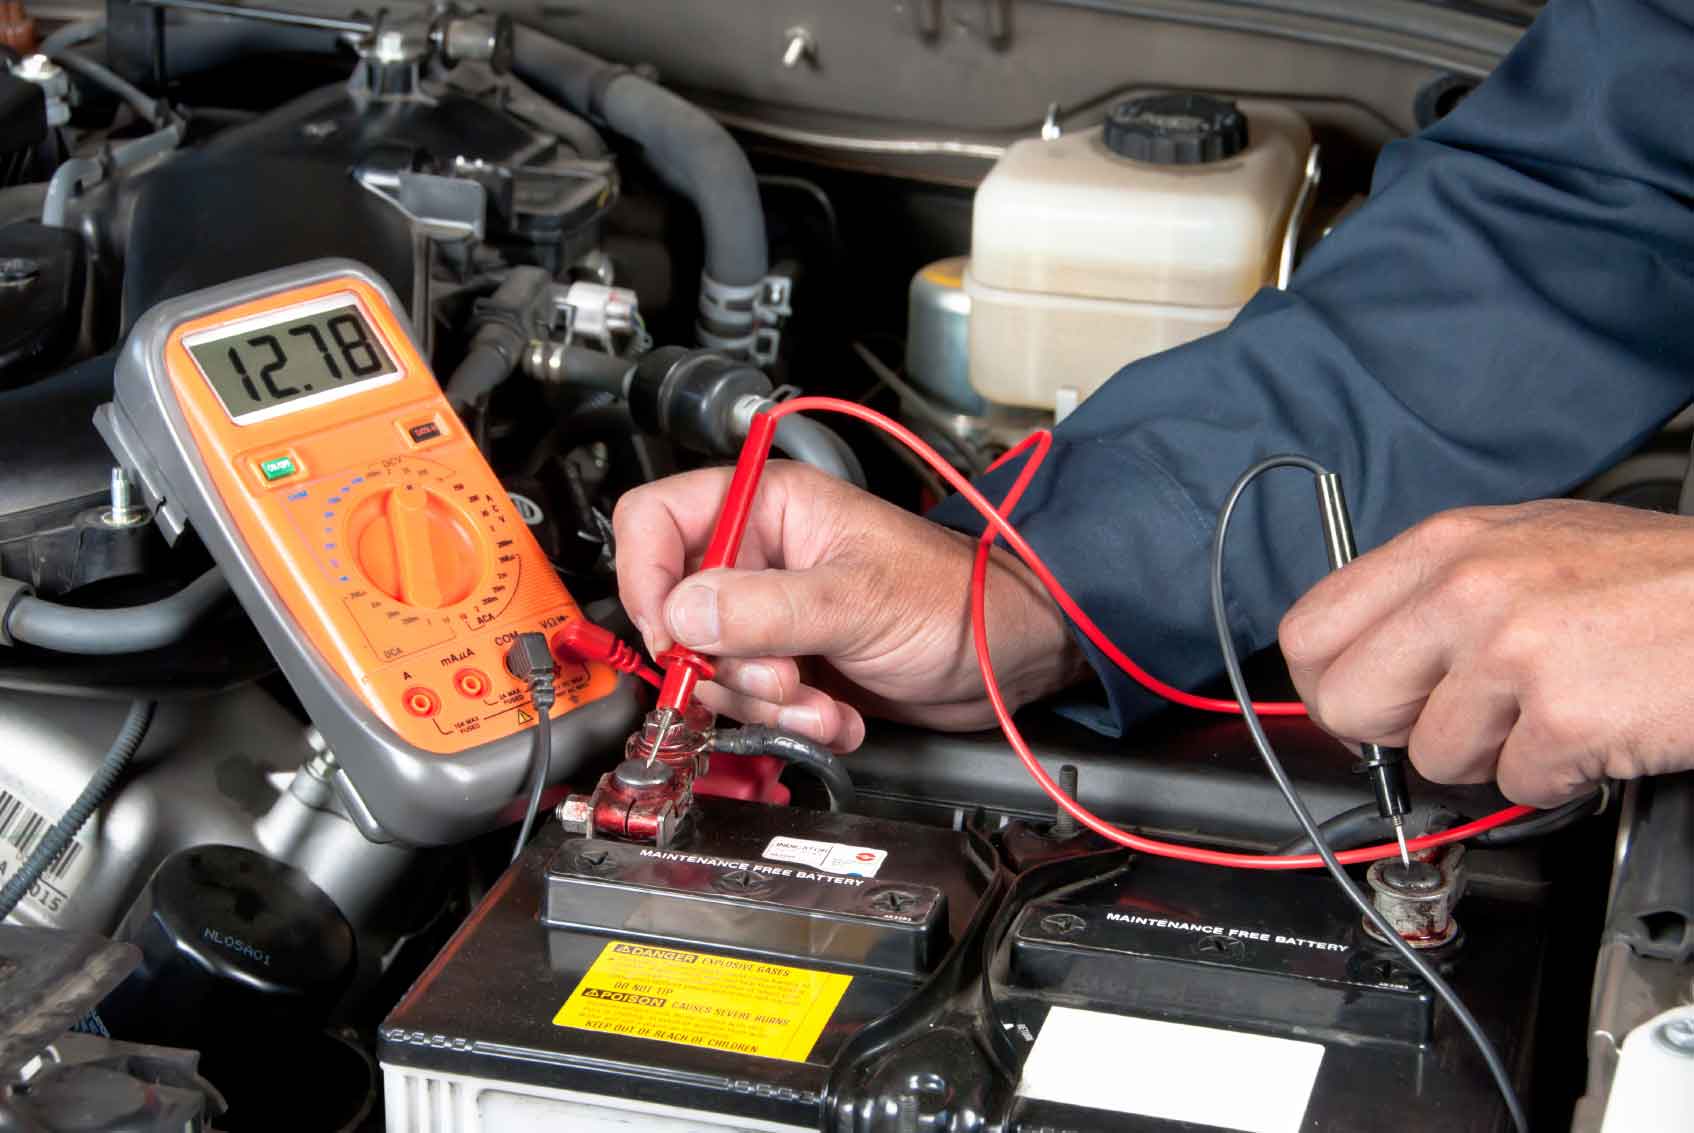 A RAM truck service battery inspection